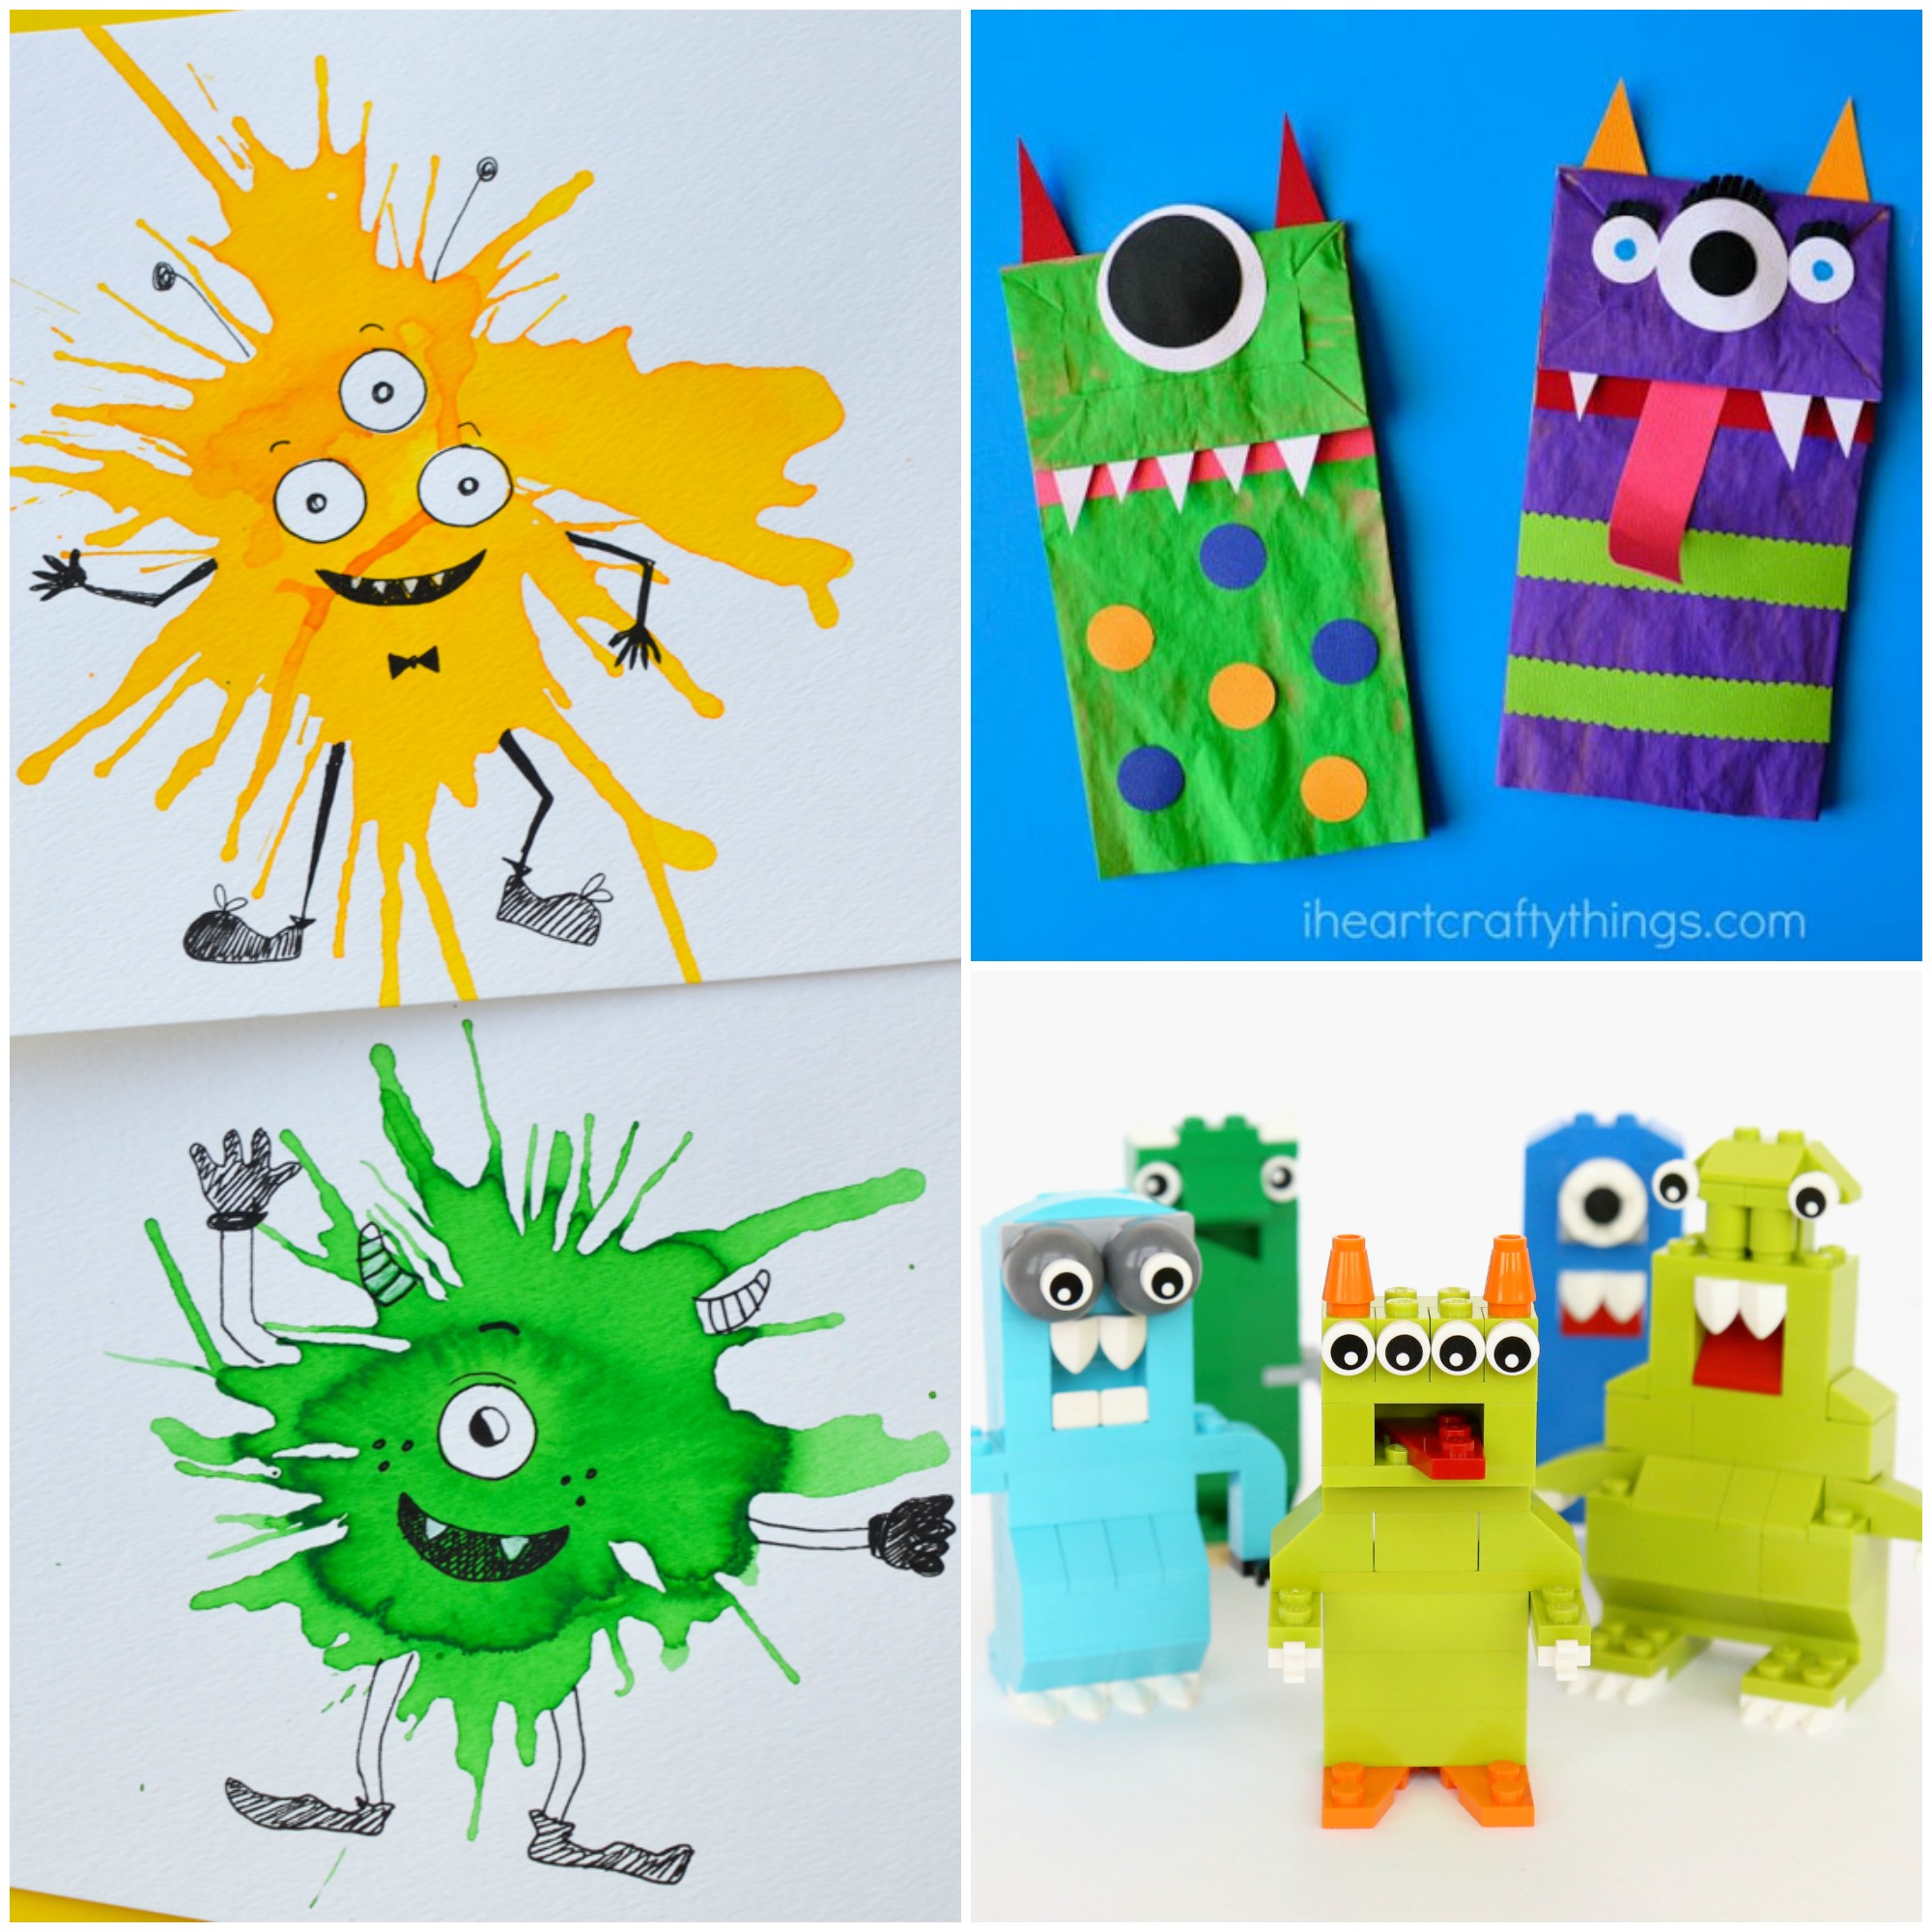 Monster Crafts for Kids